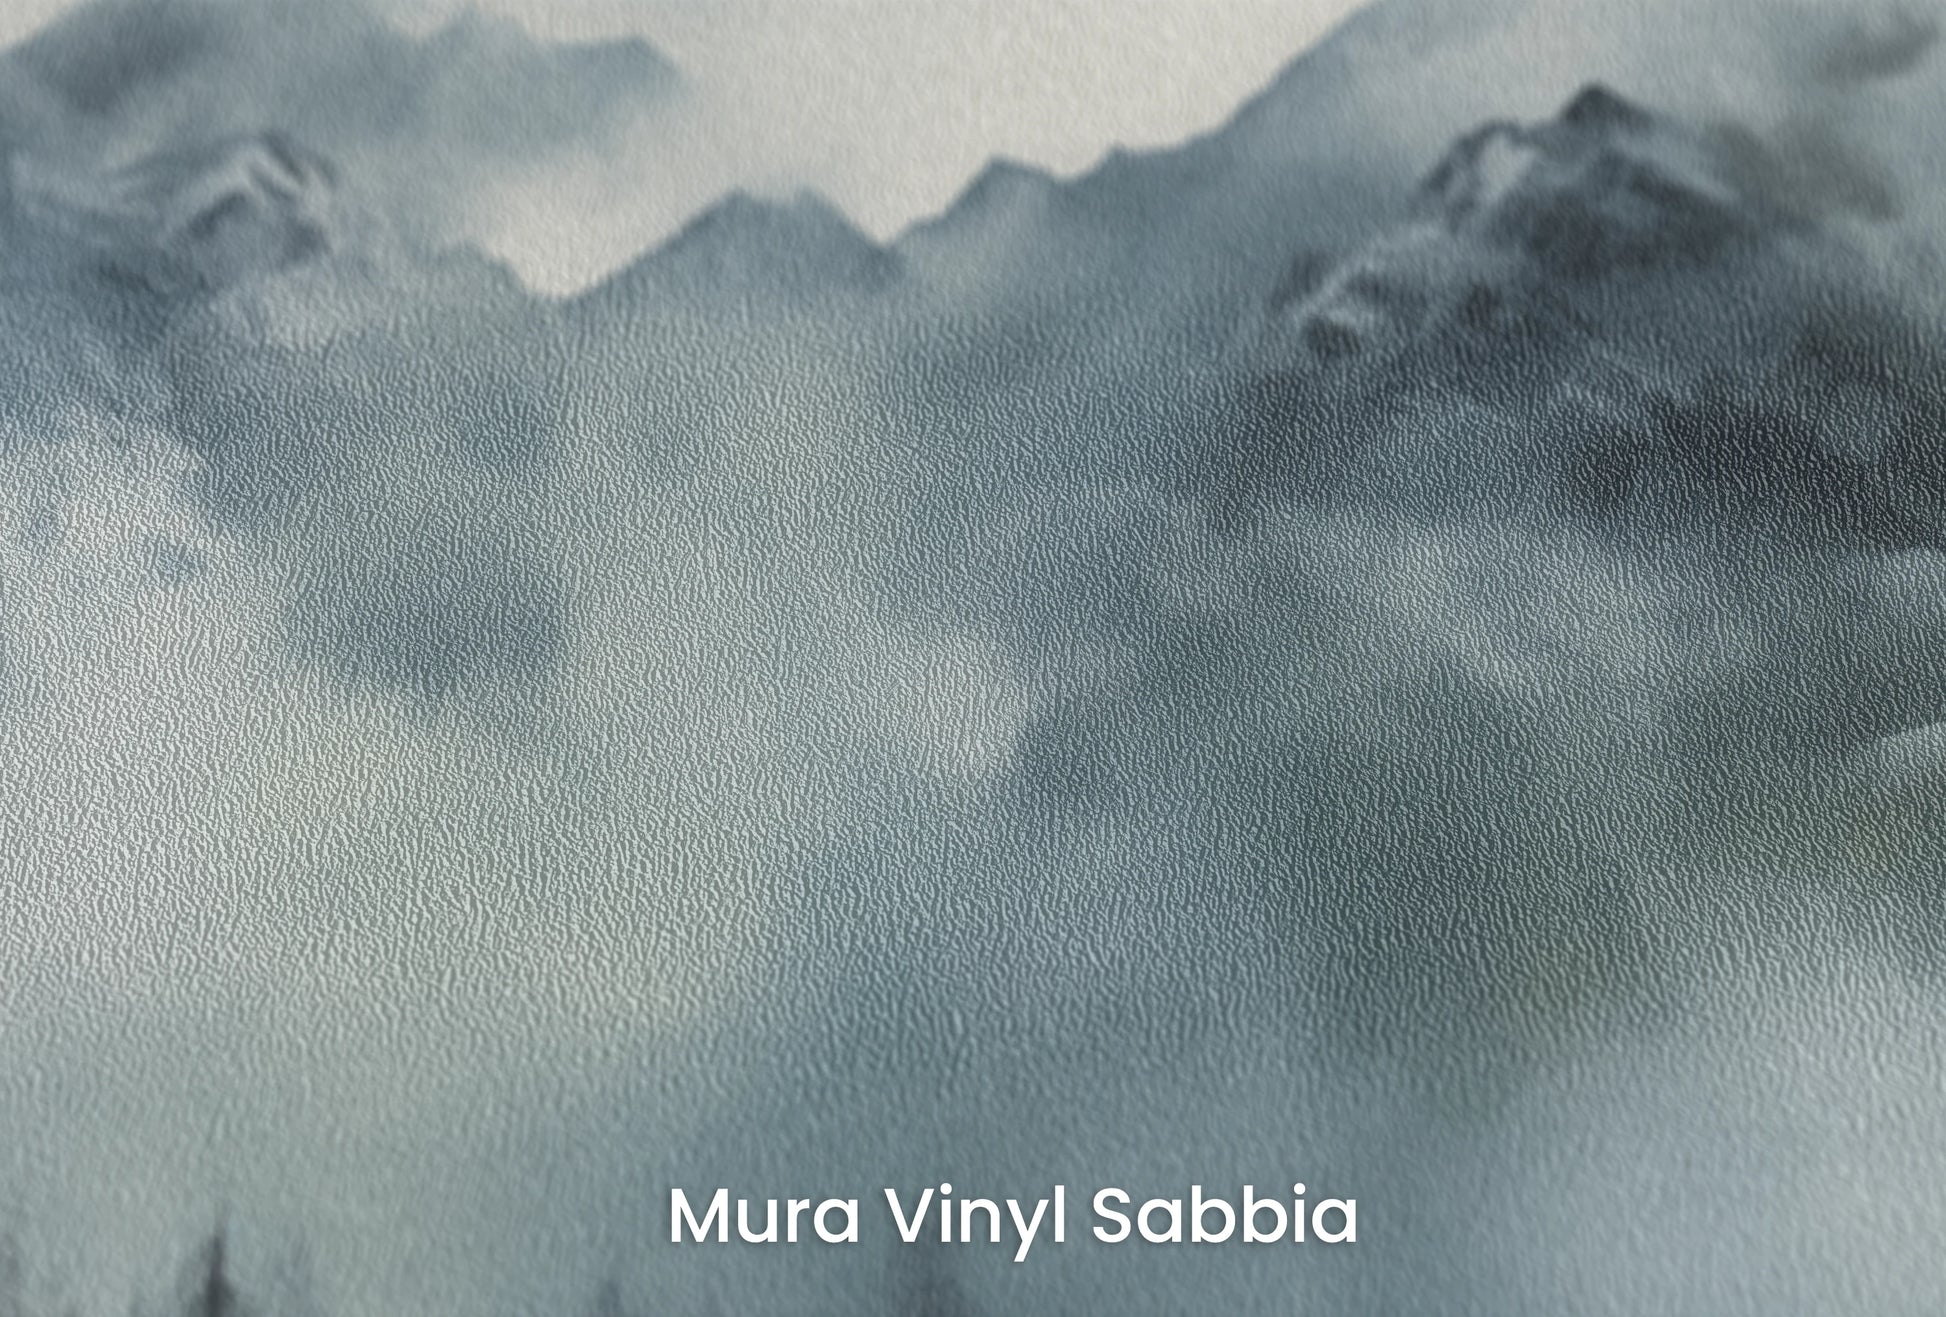 Zbliżenie na artystyczną fototapetę o nazwie Ethereal Fog na podłożu Mura Vinyl Sabbia struktura grubego ziarna piasku.